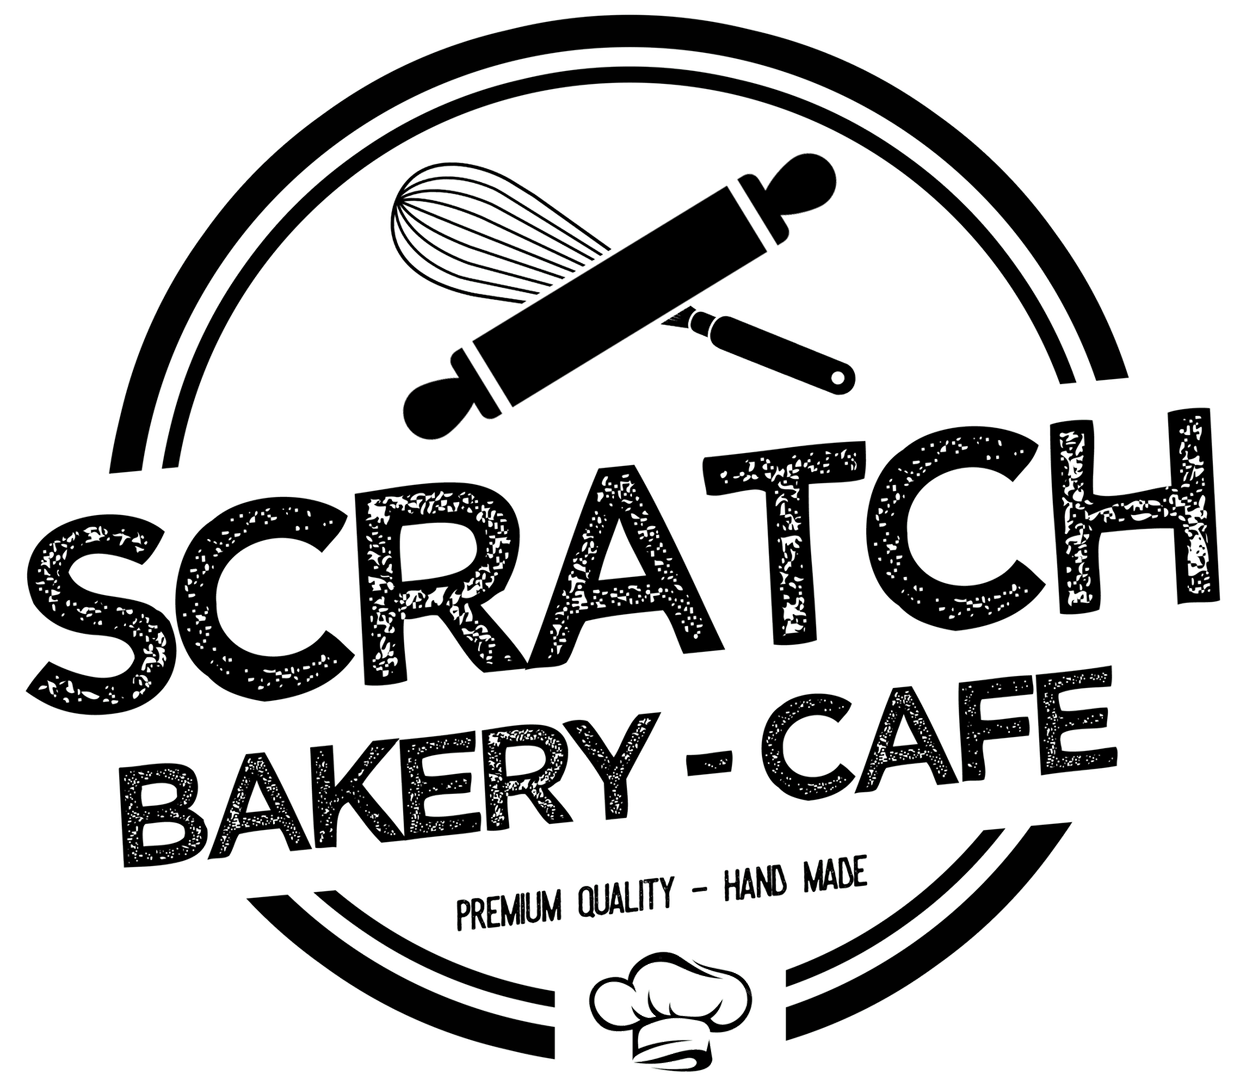 Scratch Bakery Café - Ribbon Cutting Ceremony